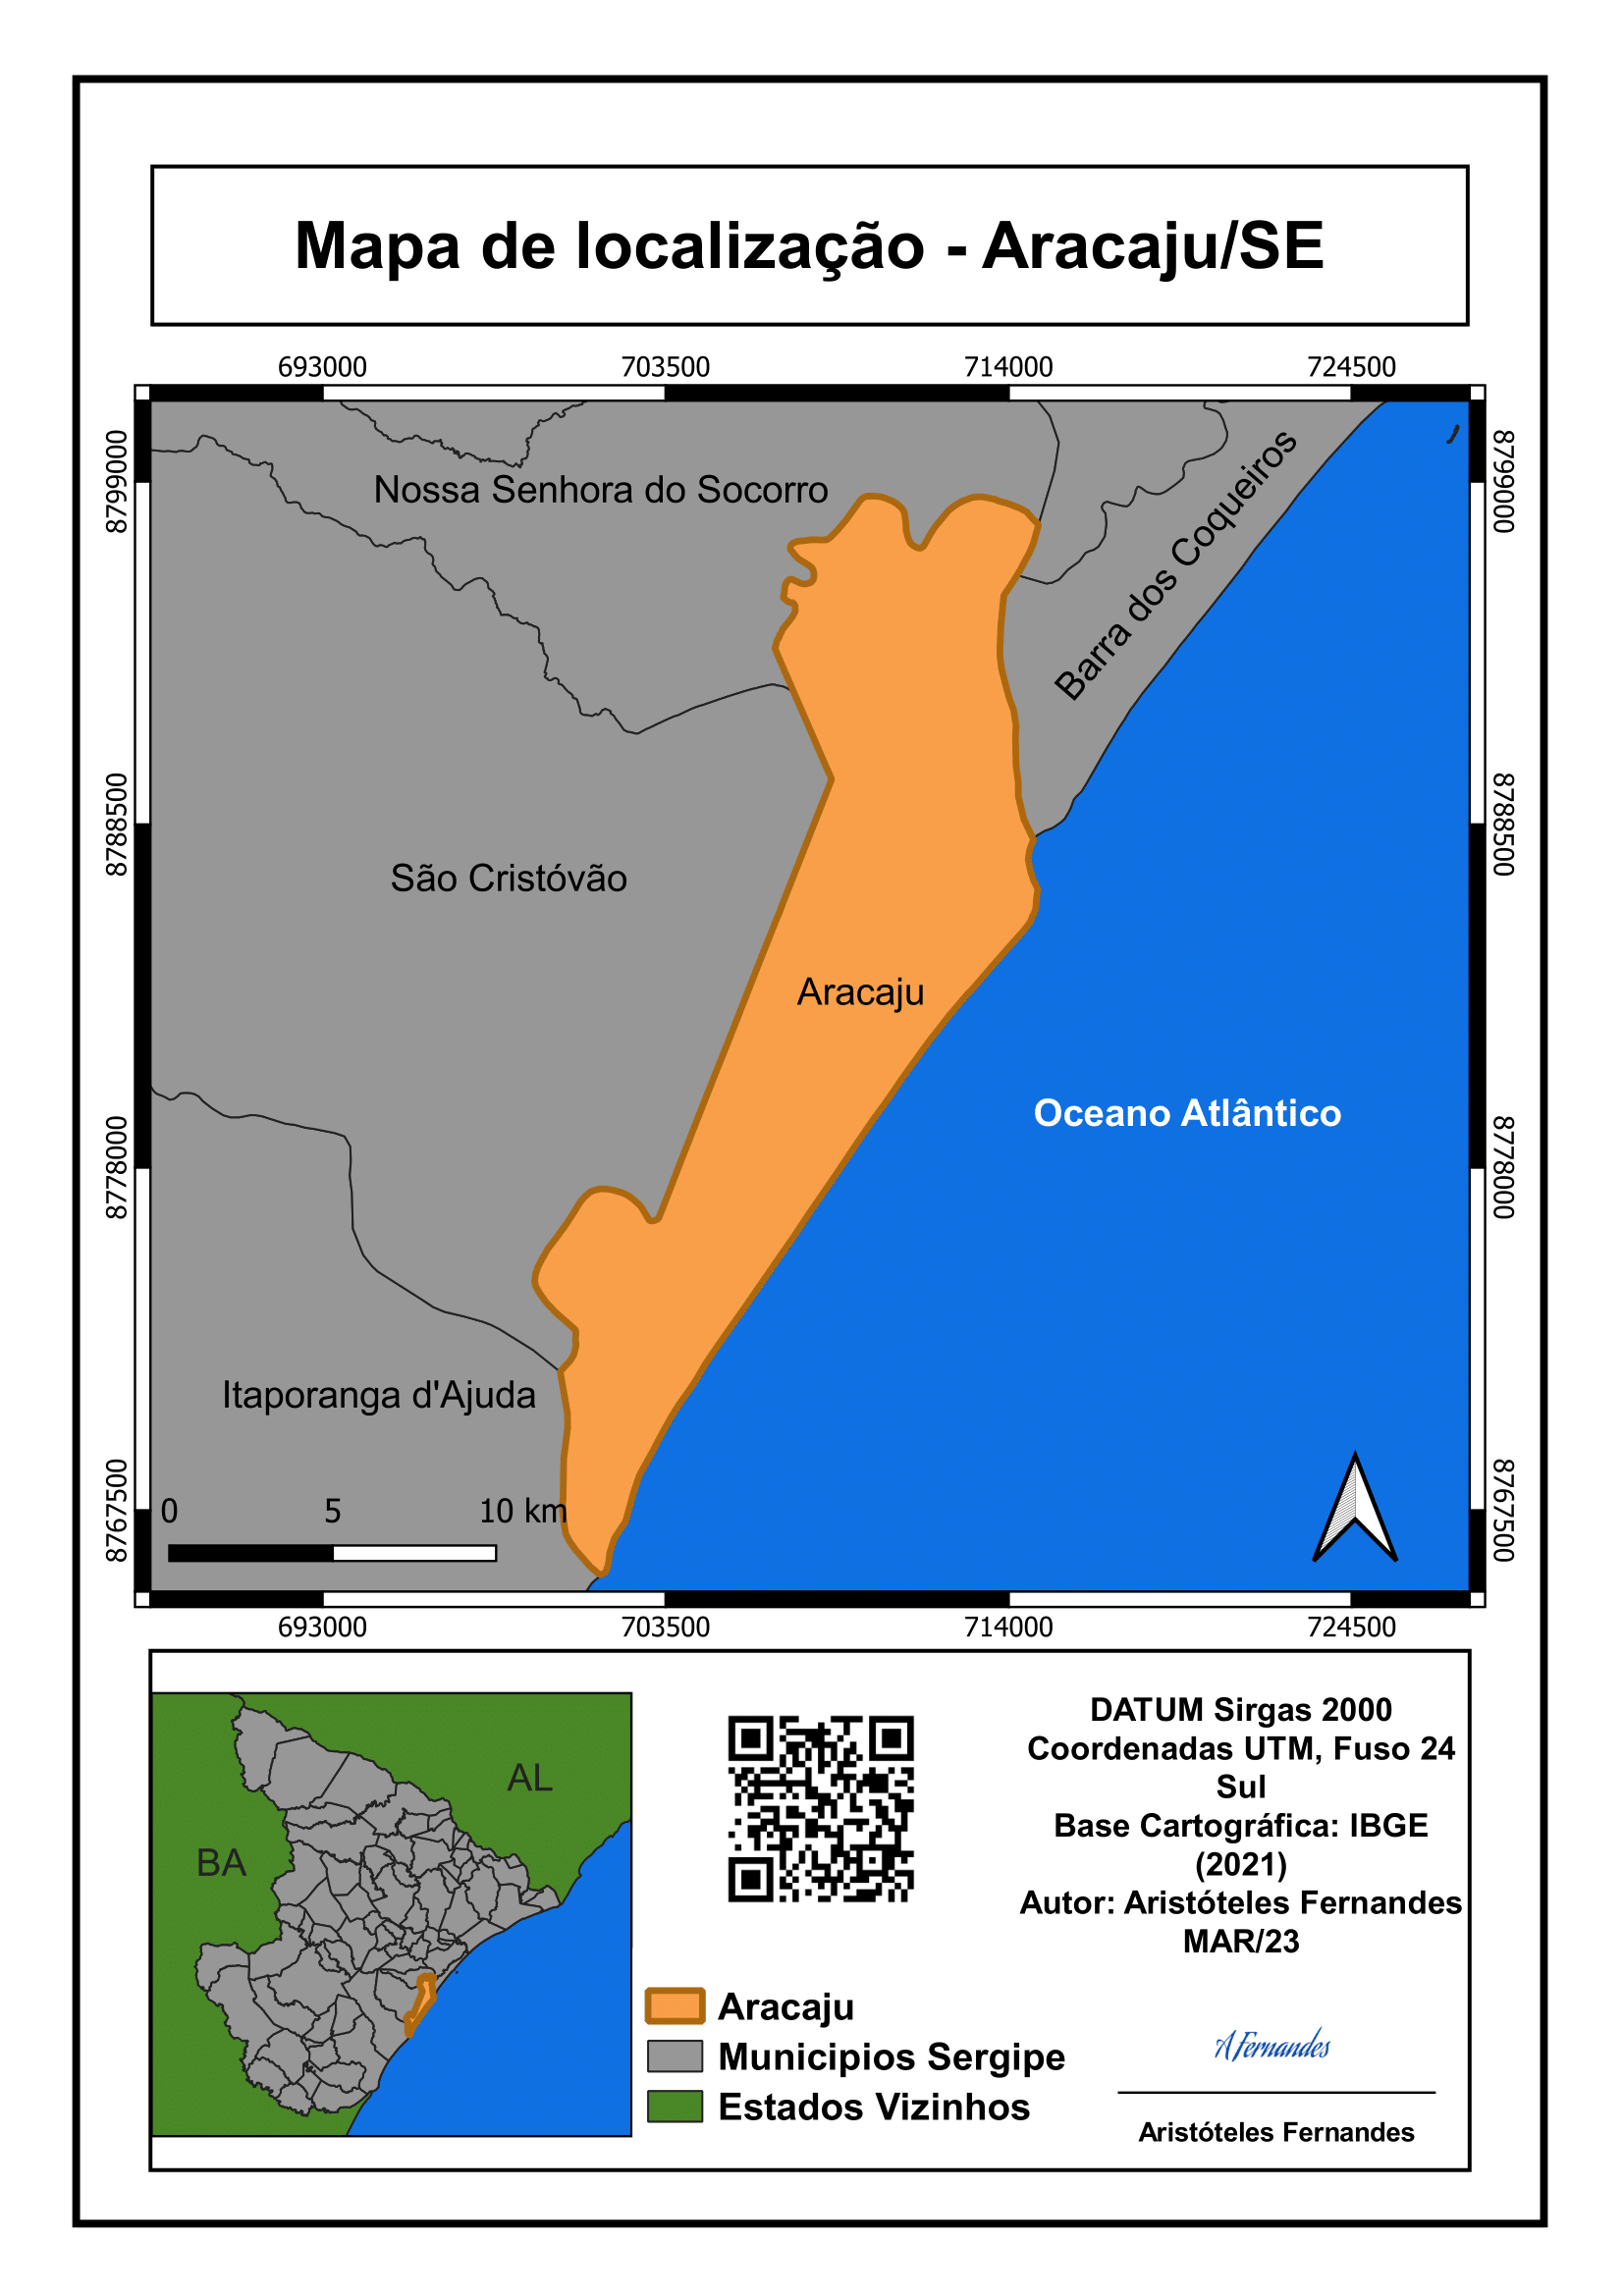 Mapa de localização Aracaju/SE